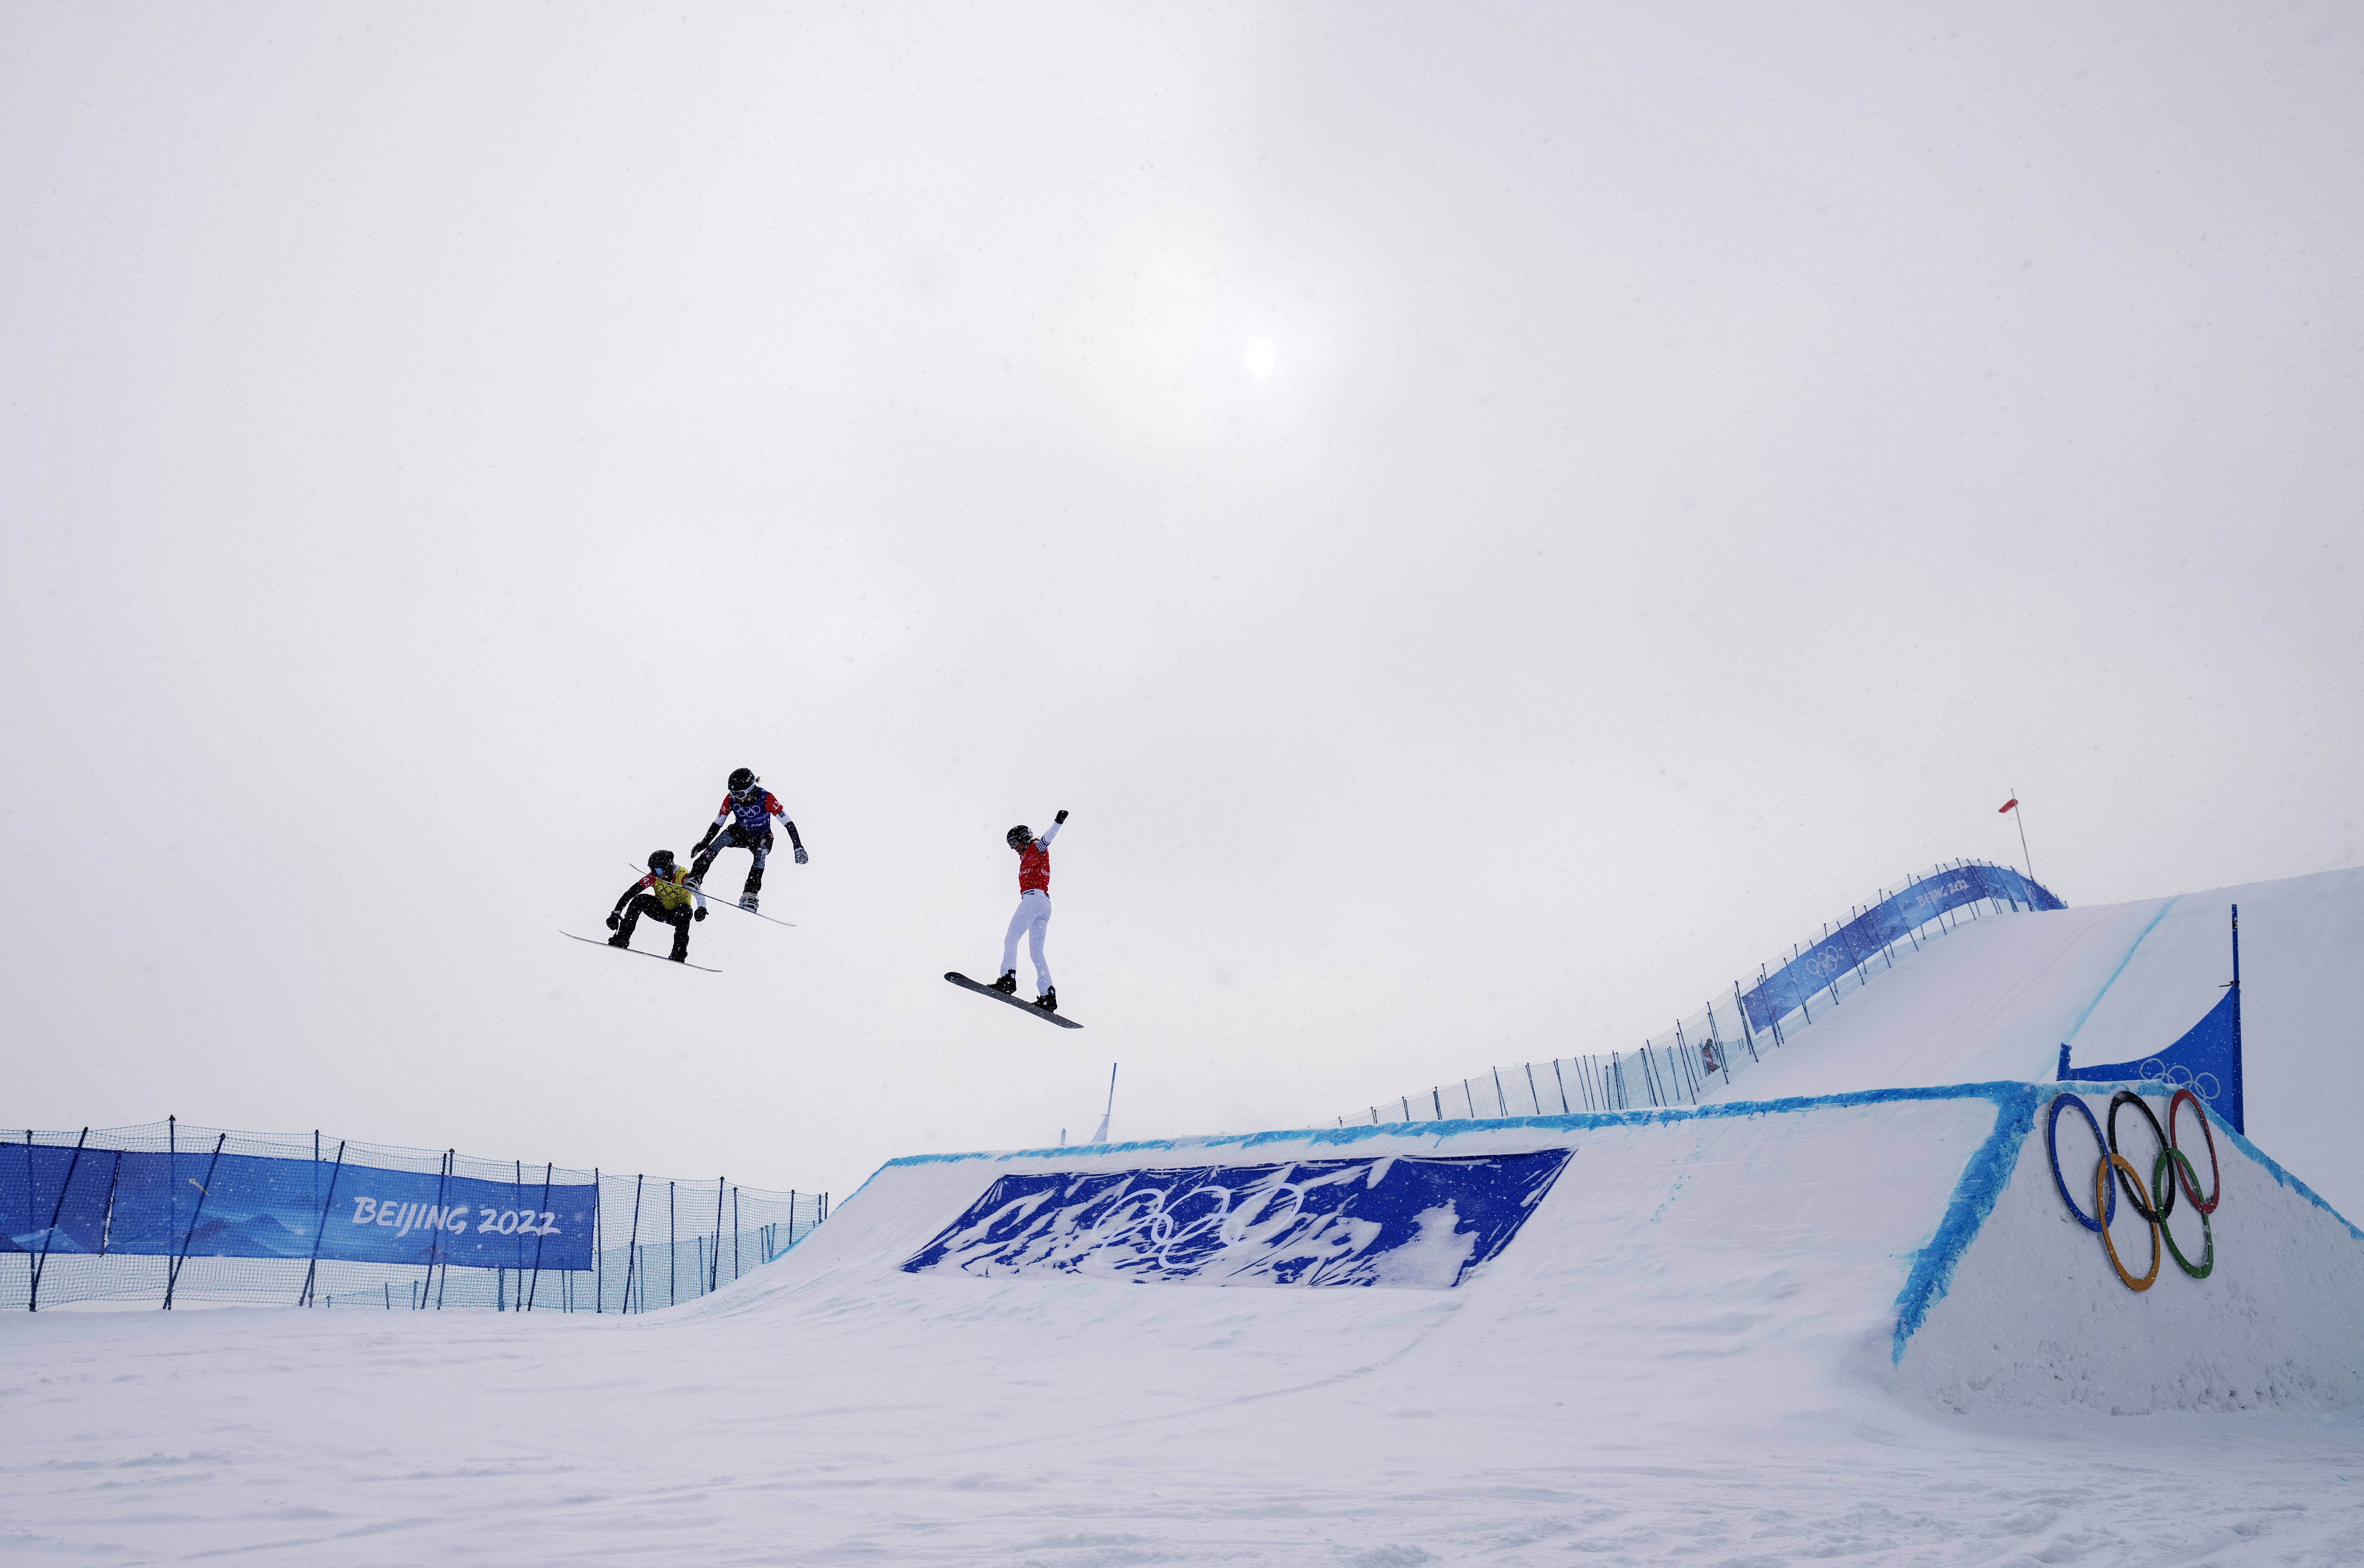 北京2022年冬奥会单板滑雪障碍追逐混合团体比赛在张家口云顶滑雪公园